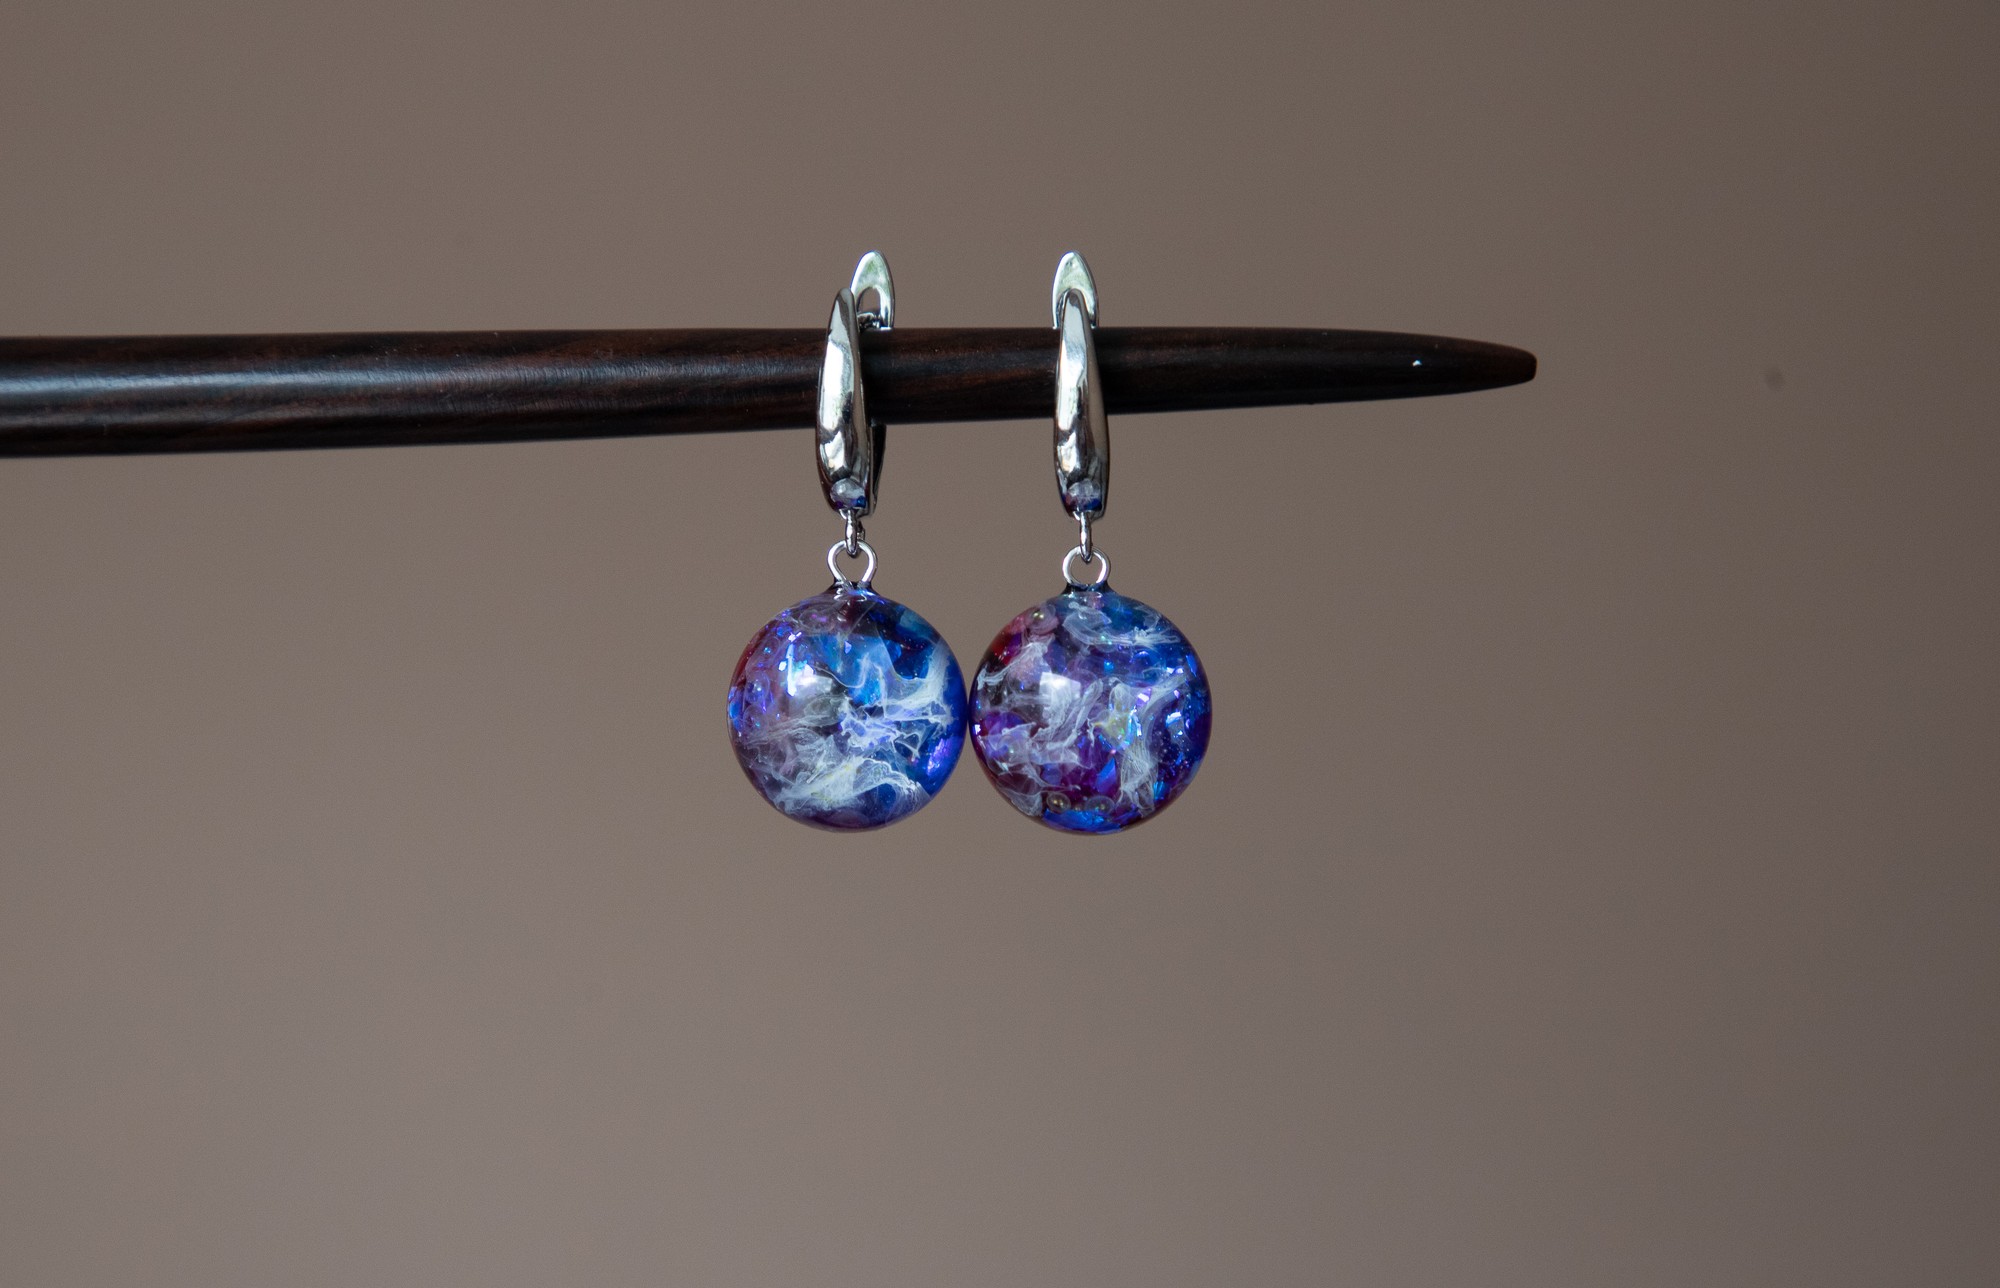 Cosmic earrings, galaxy jewelry, planet earrings, Galaxy earrings, fantasy earring